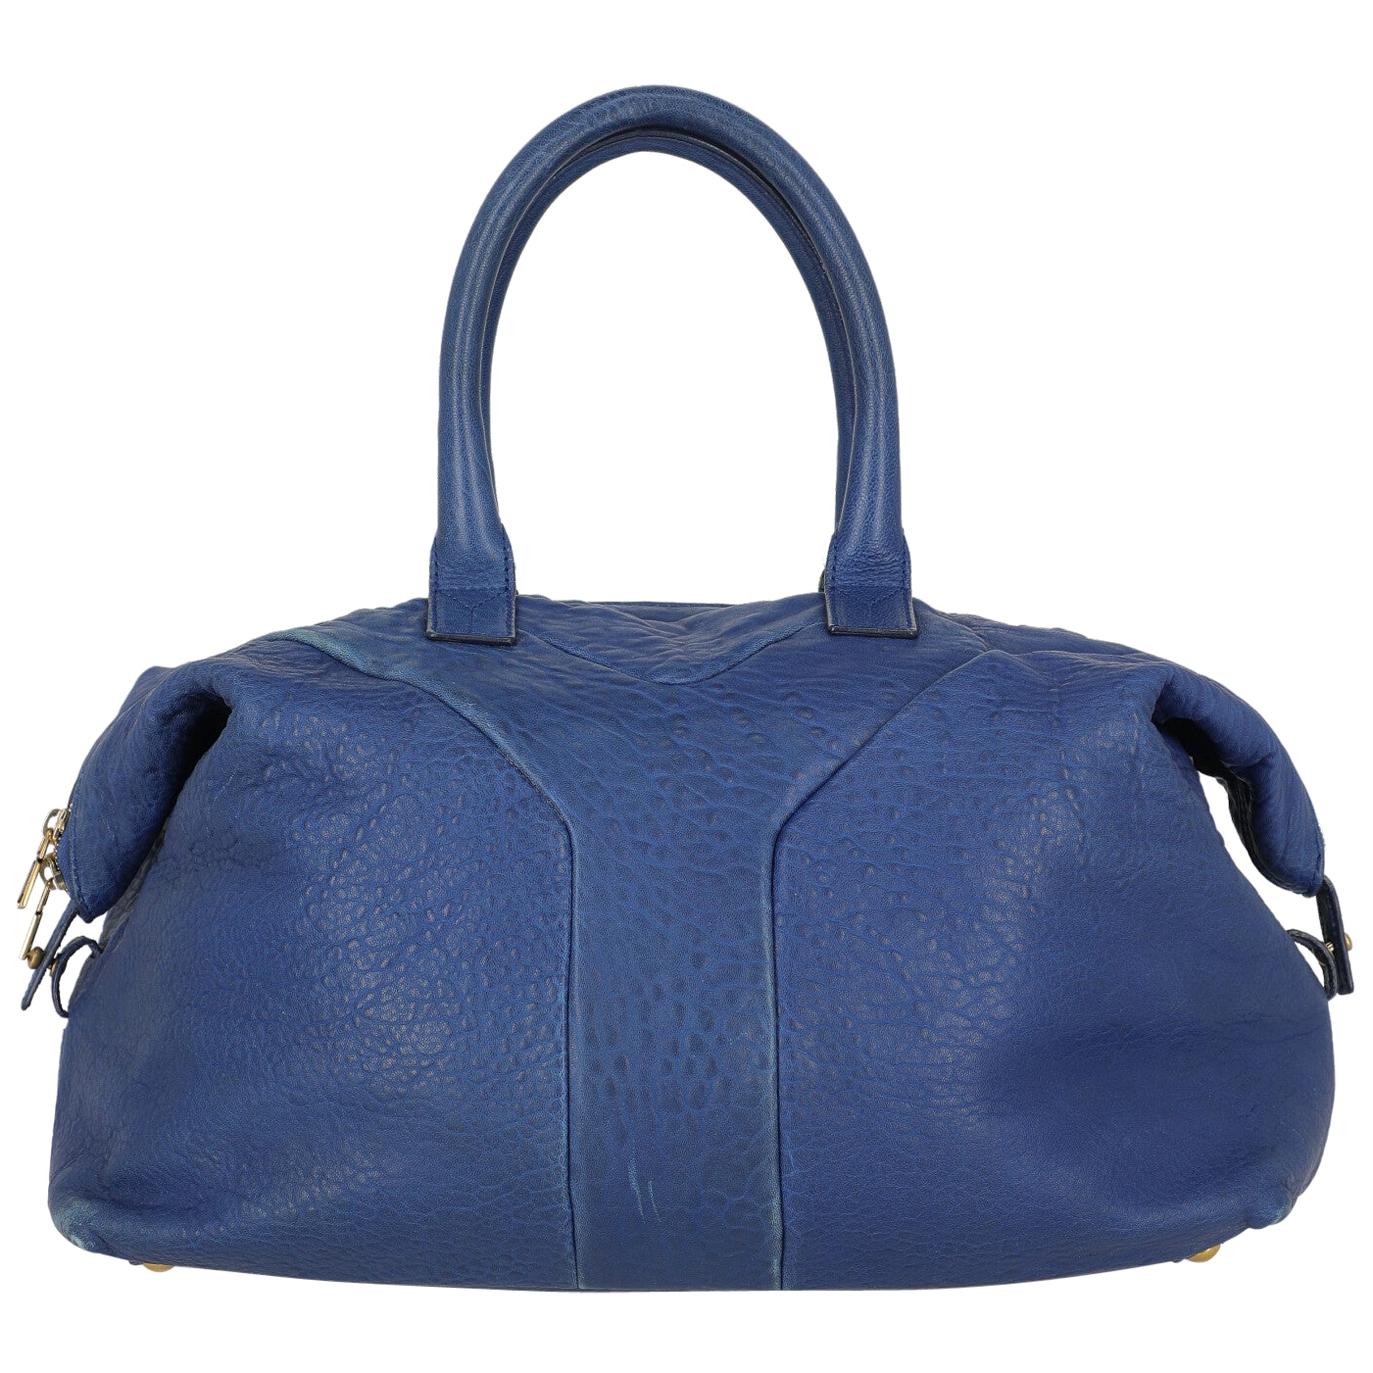 Saint Laurent Woman Handbag Navy Leather For Sale